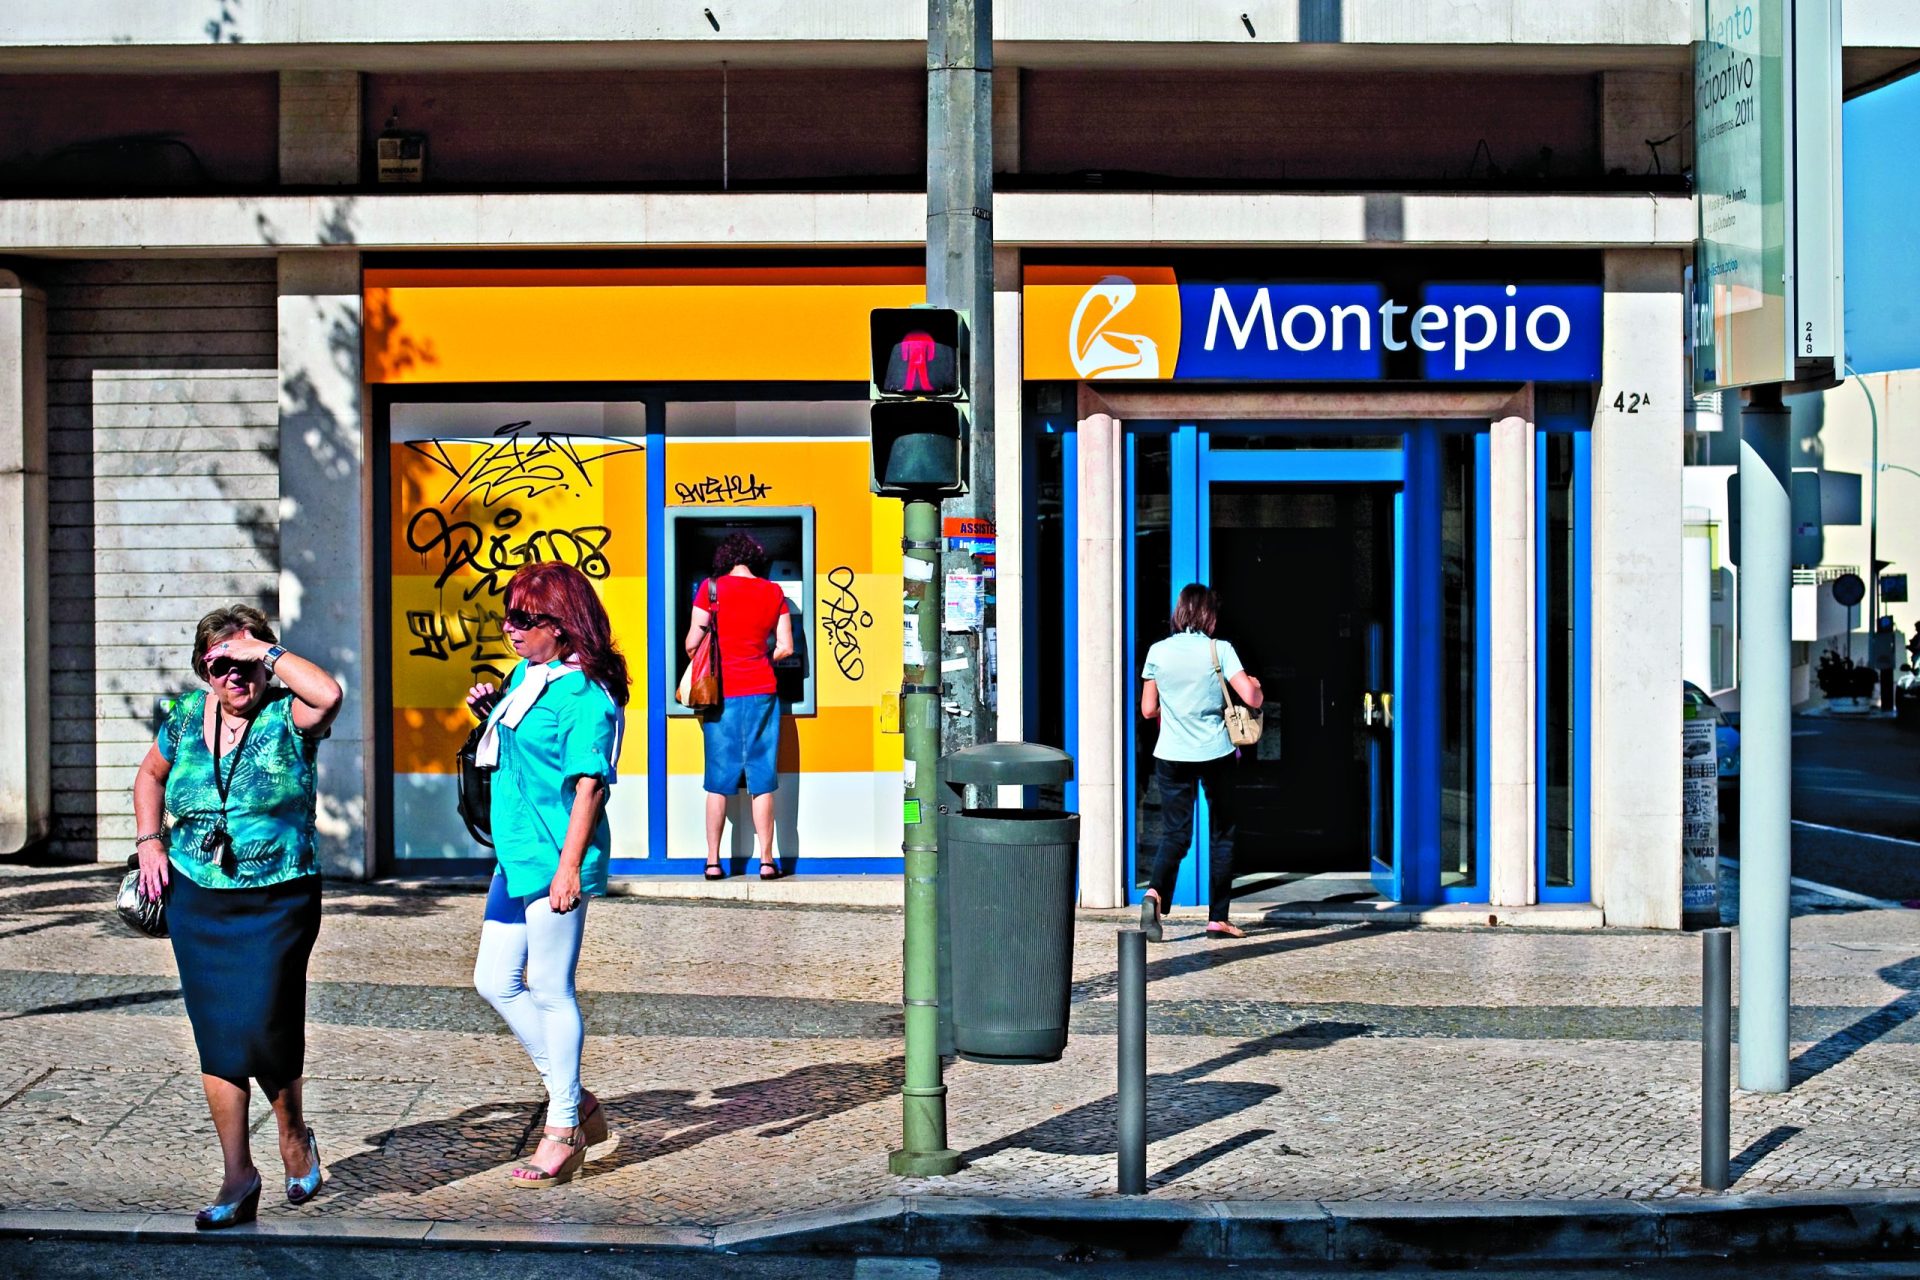 Santa Casa decide entrada no Montepio até final do mês junho